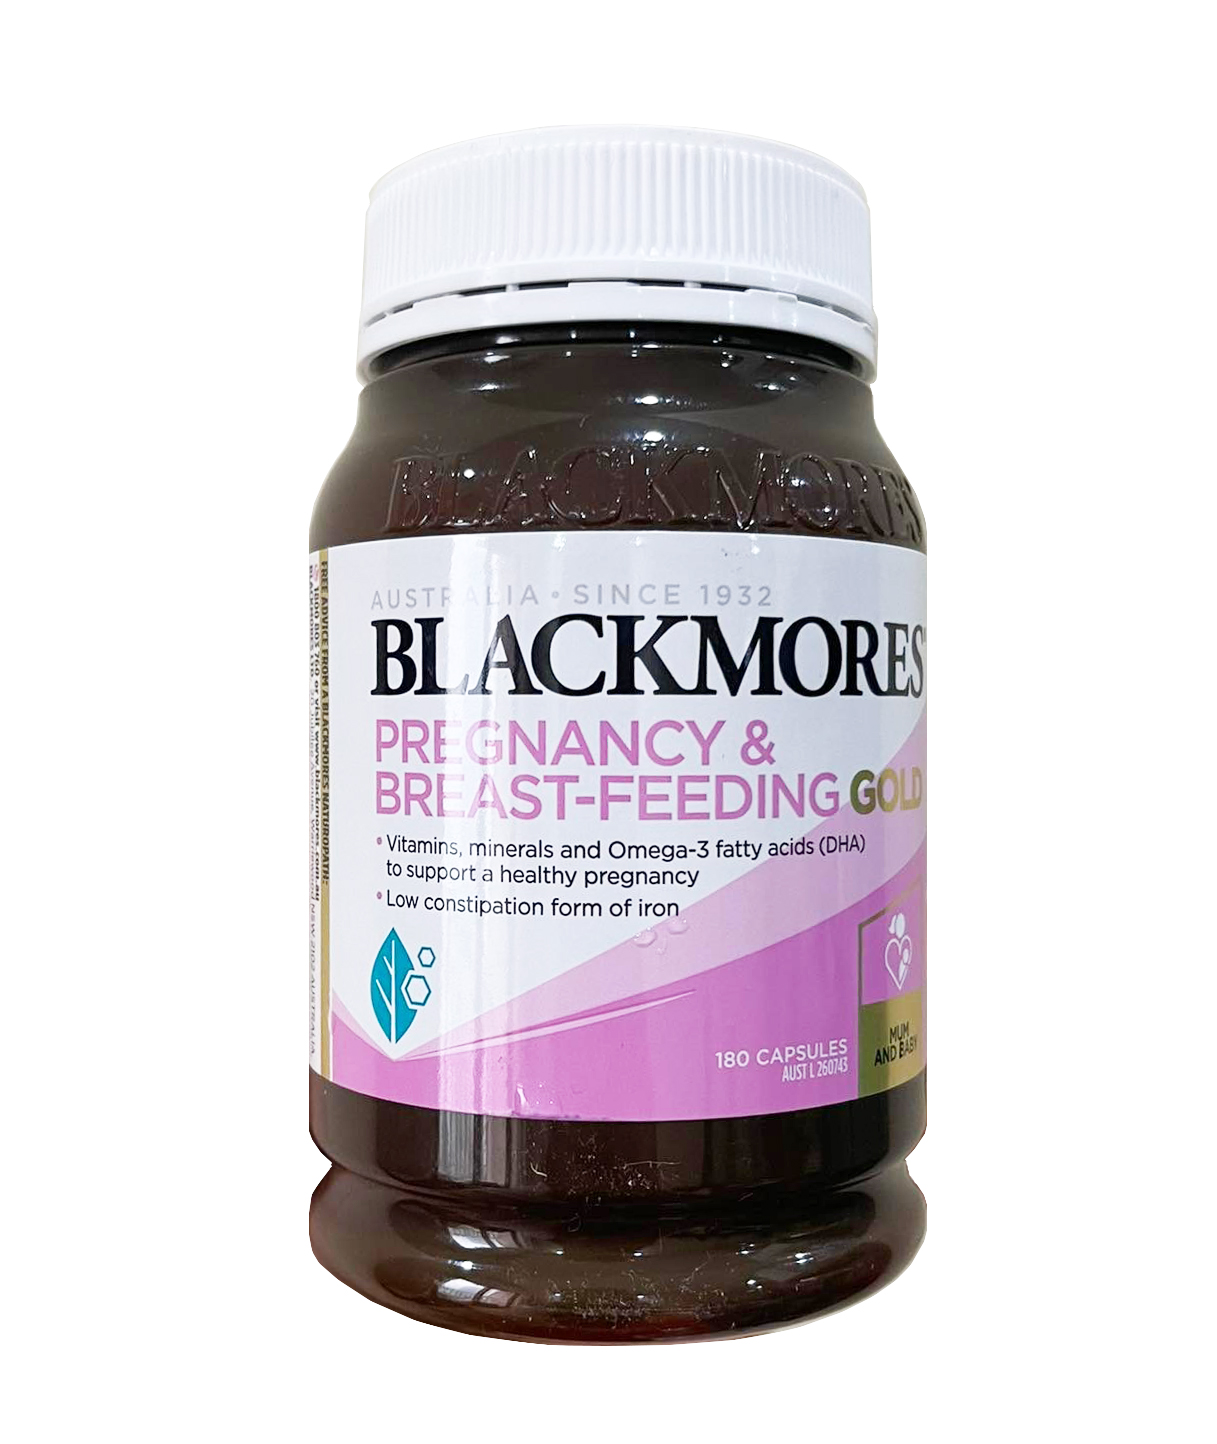 Blackmores Pregnancy Gold được nhập khẩu từ đâu?
